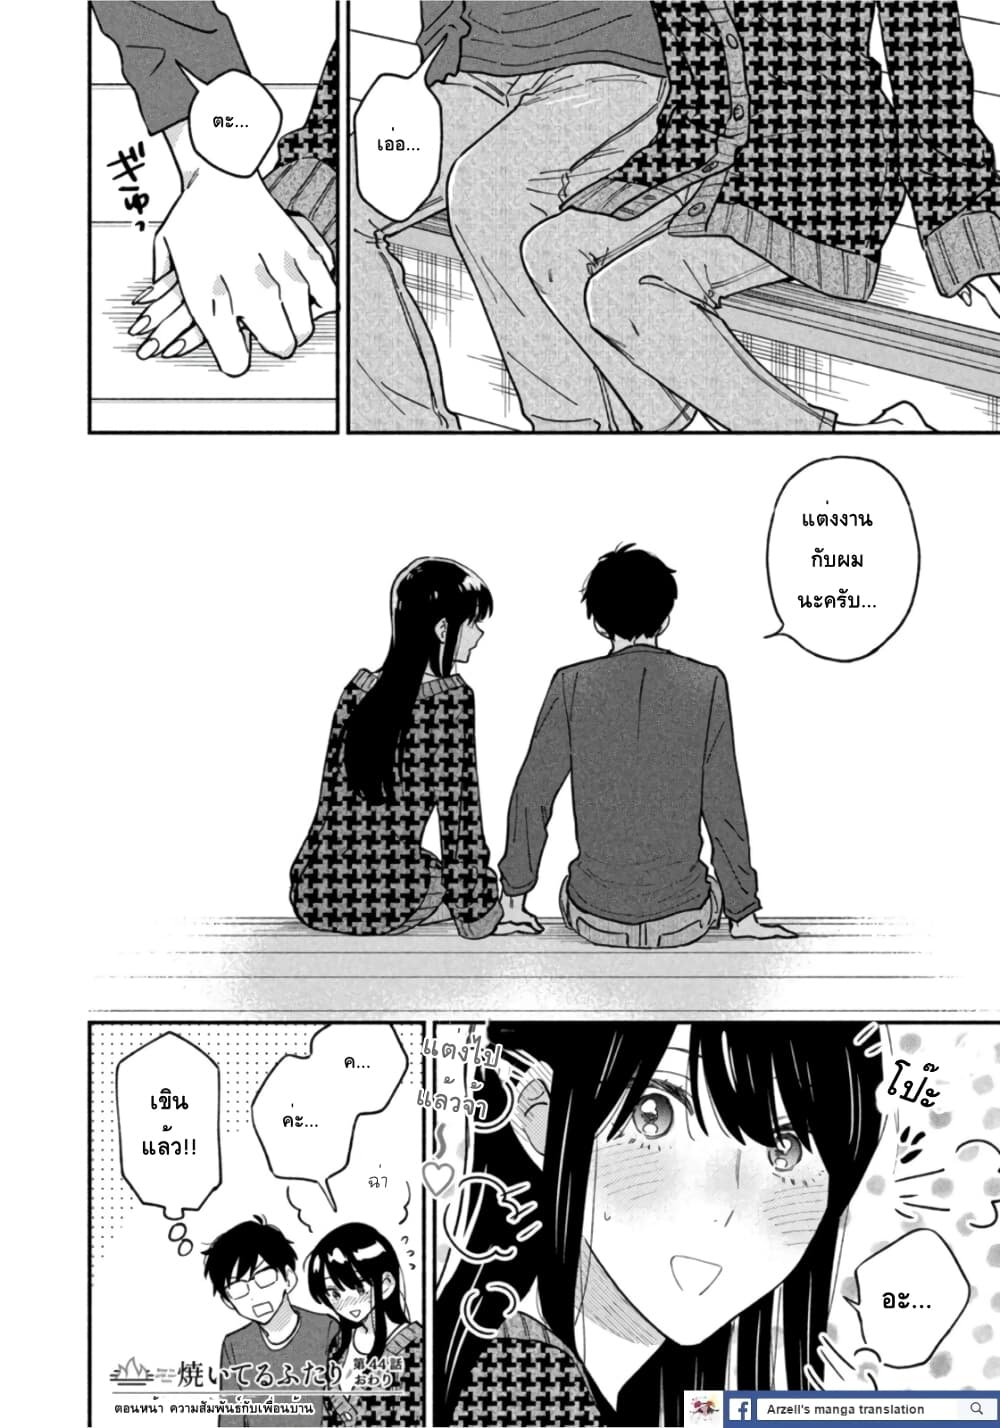 Манга s love. How to Grill our Love Manga. 44 Days Manga.